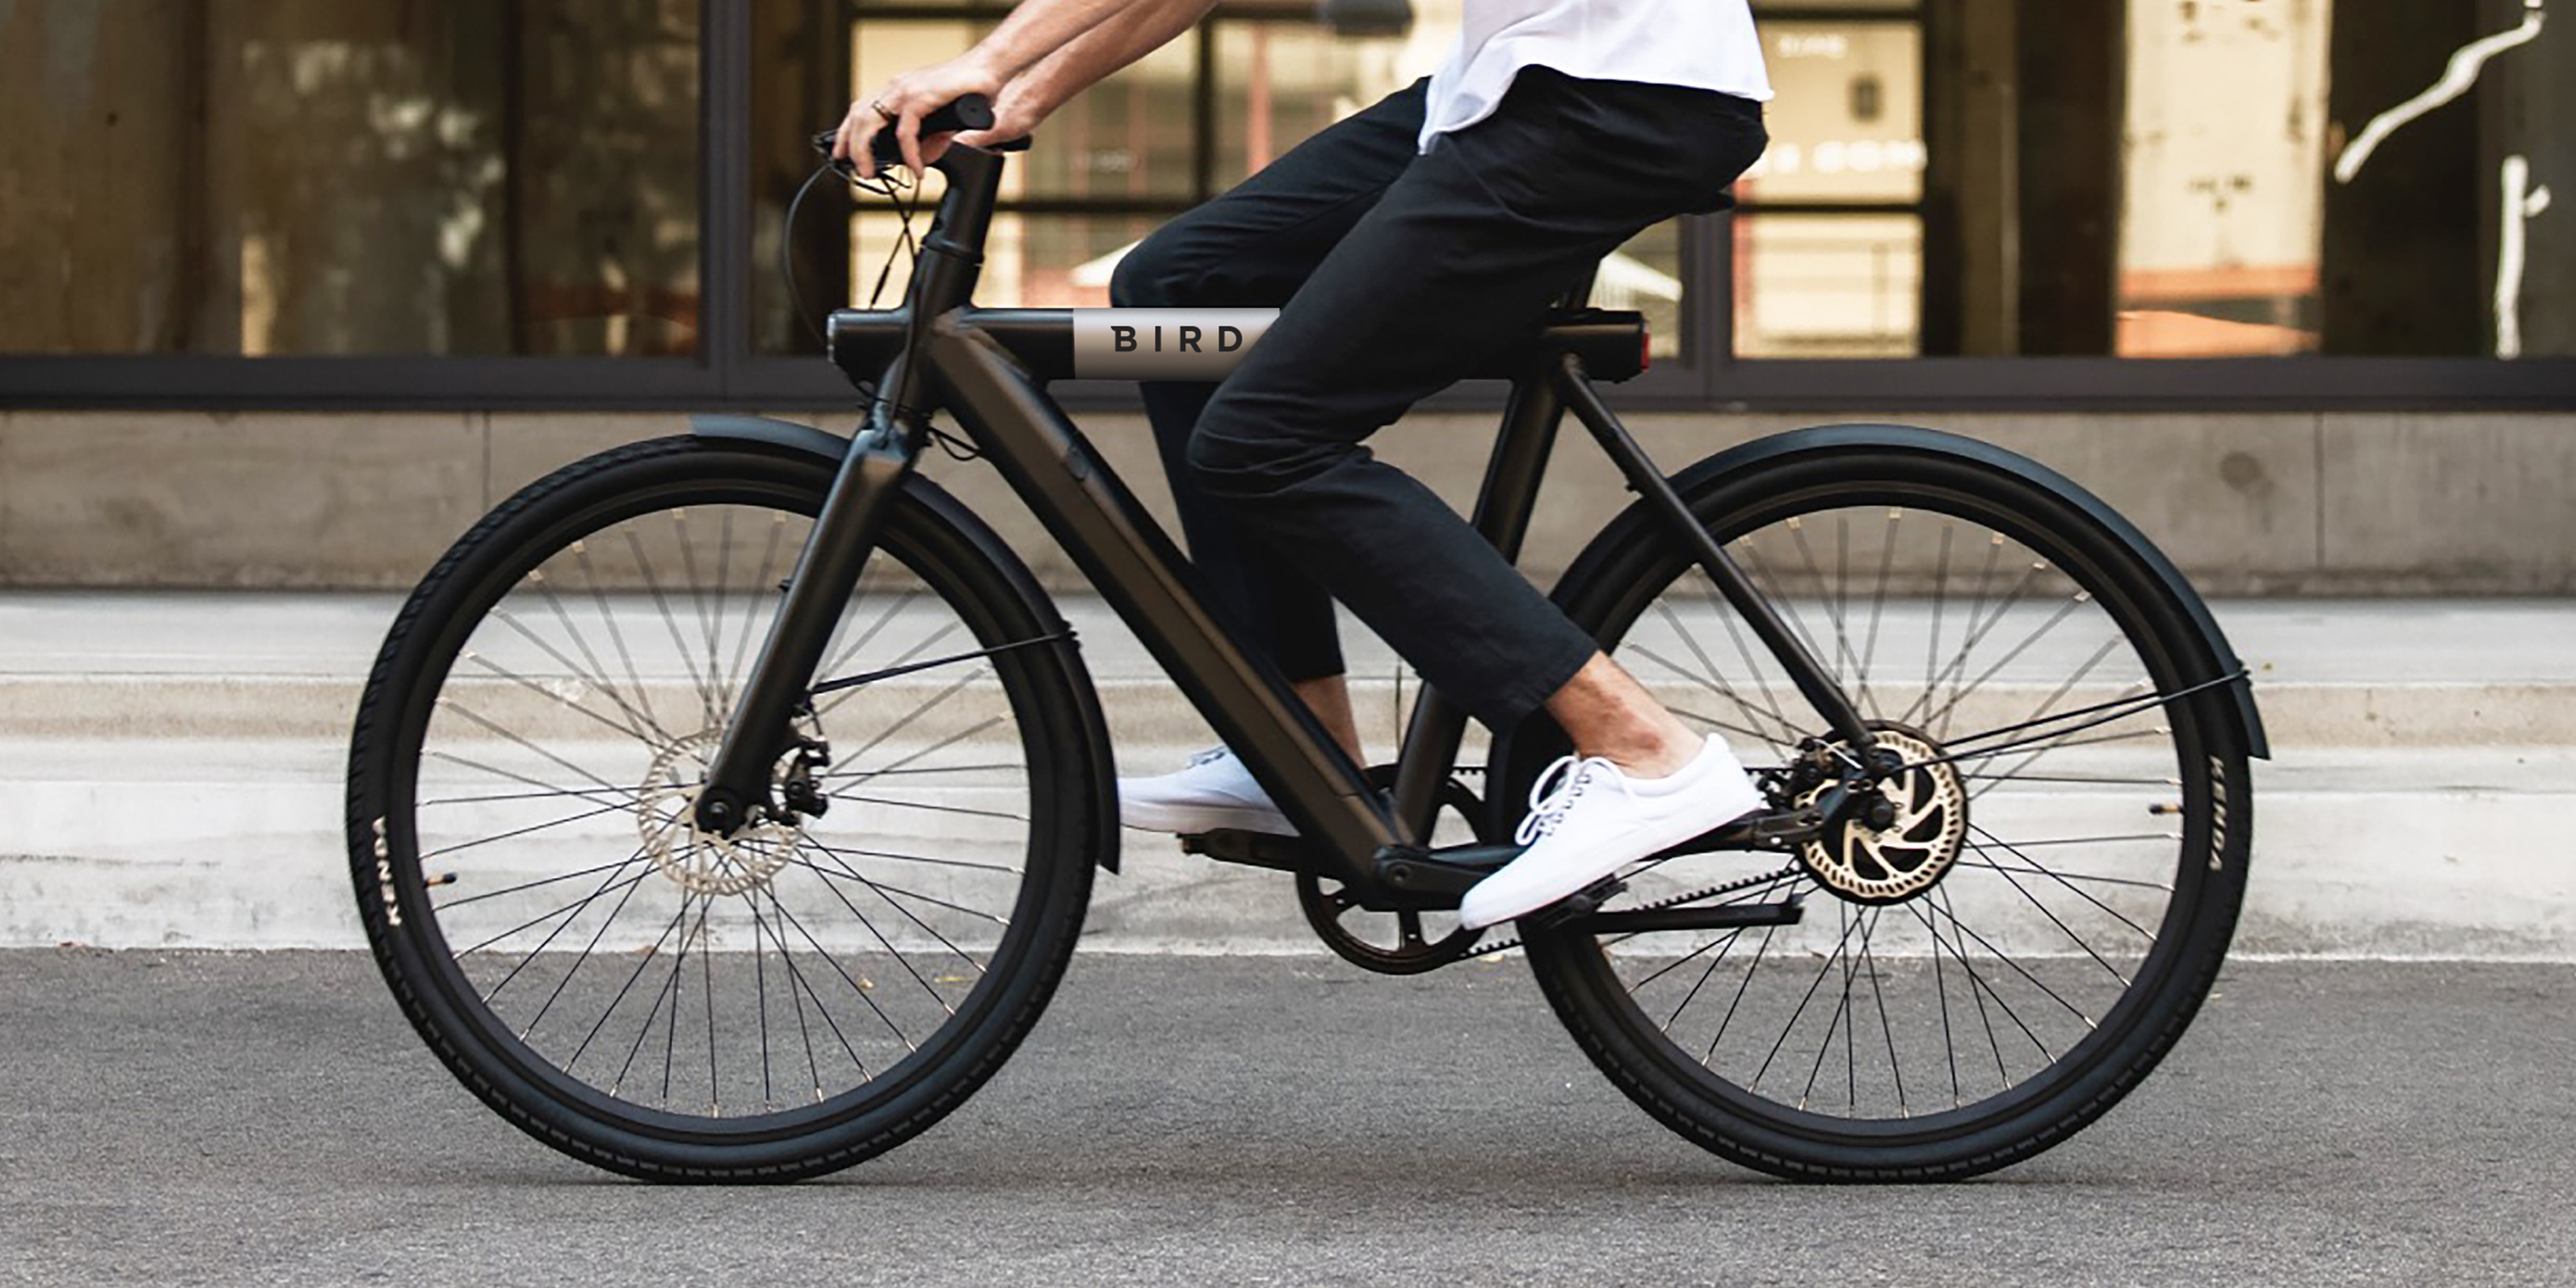 Zich voorstellen Pas op Fruit groente Bird Bike review: is de e-bike het waard? | Voltes - Electric Mobility